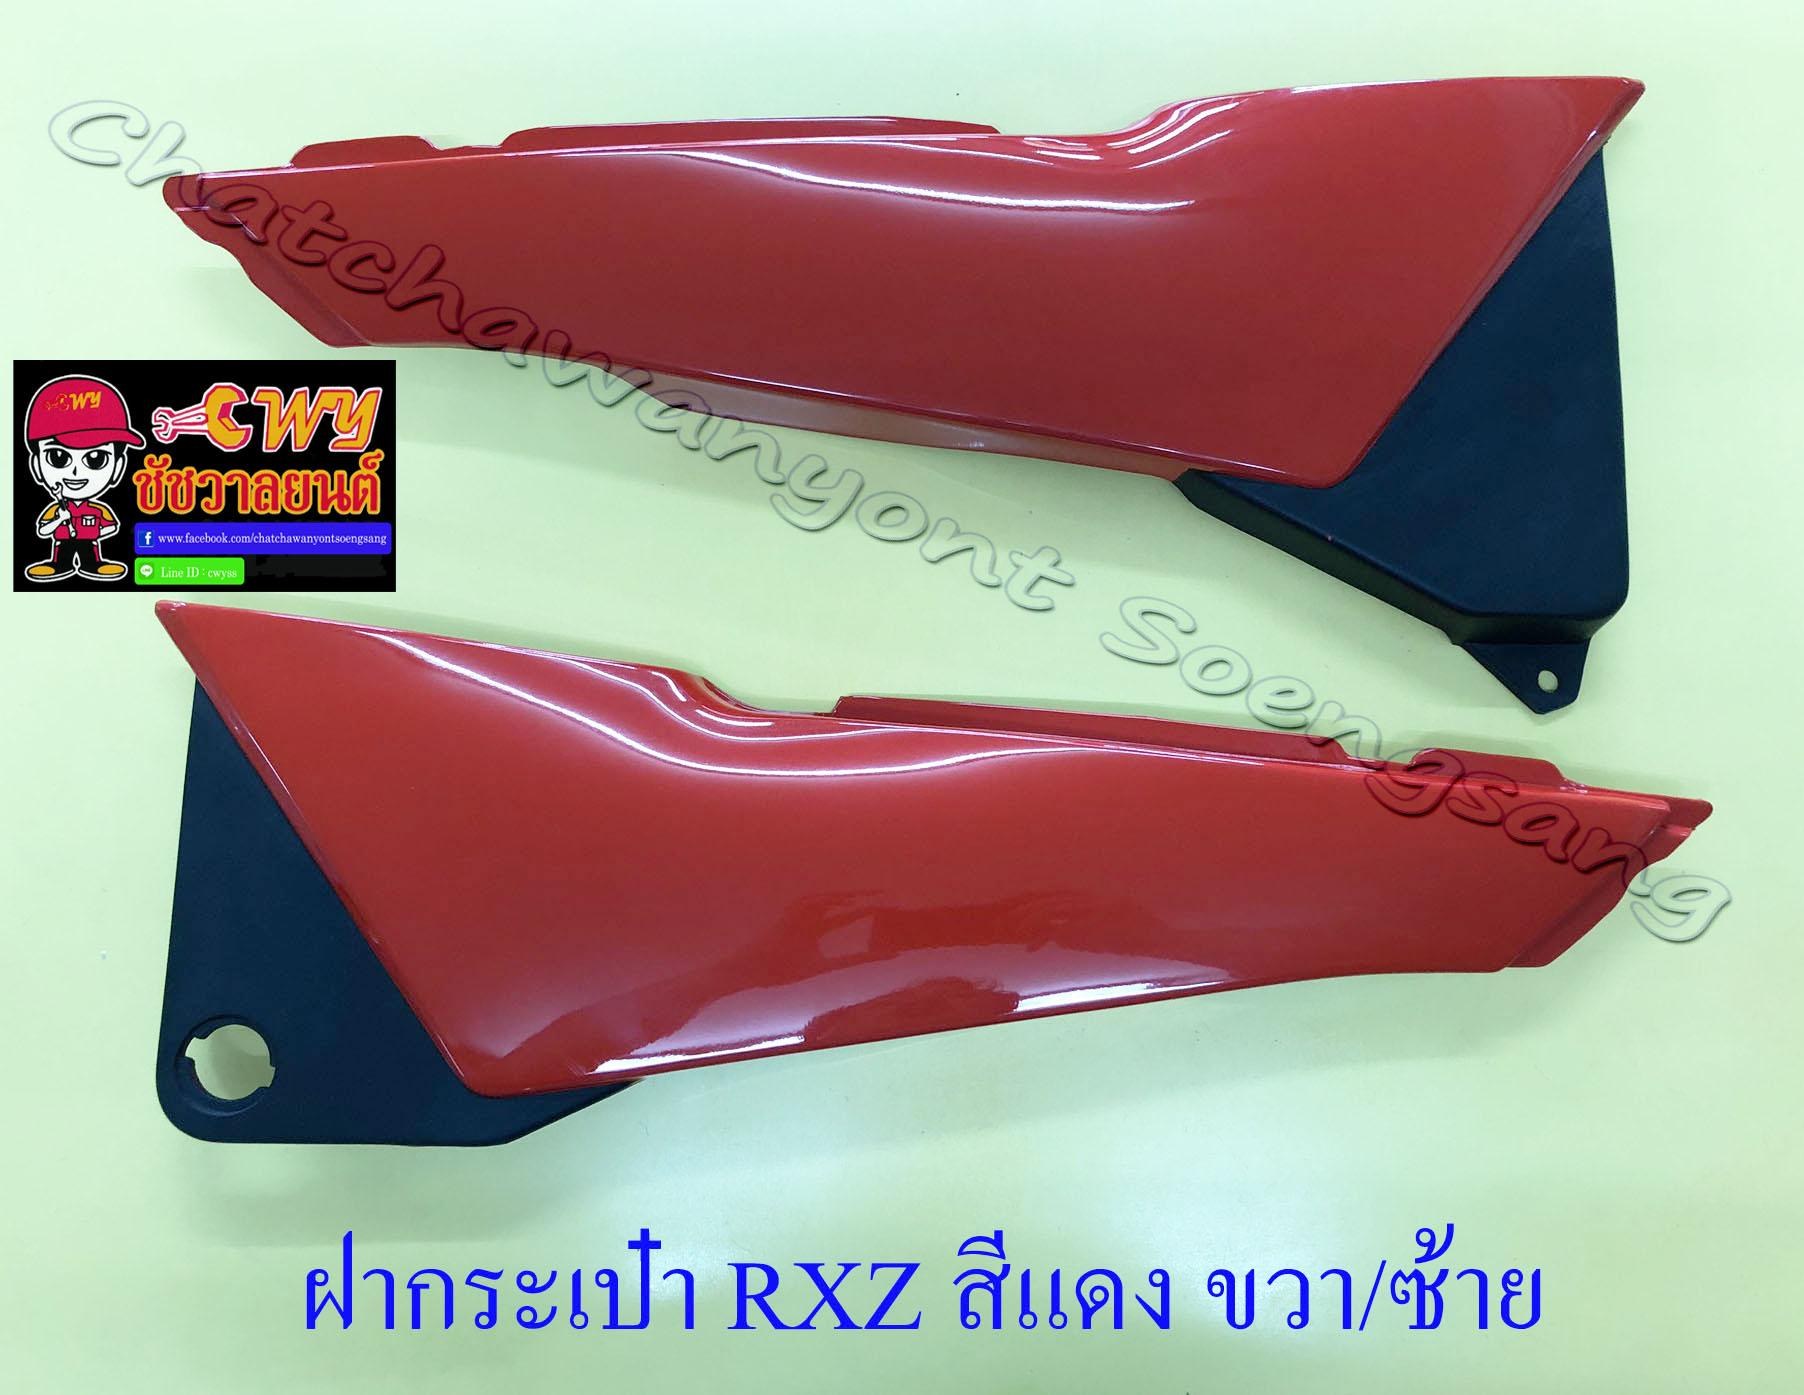 ฝากระเป๋า RXZ สีแดง ขวา/ซ้าย (17864)